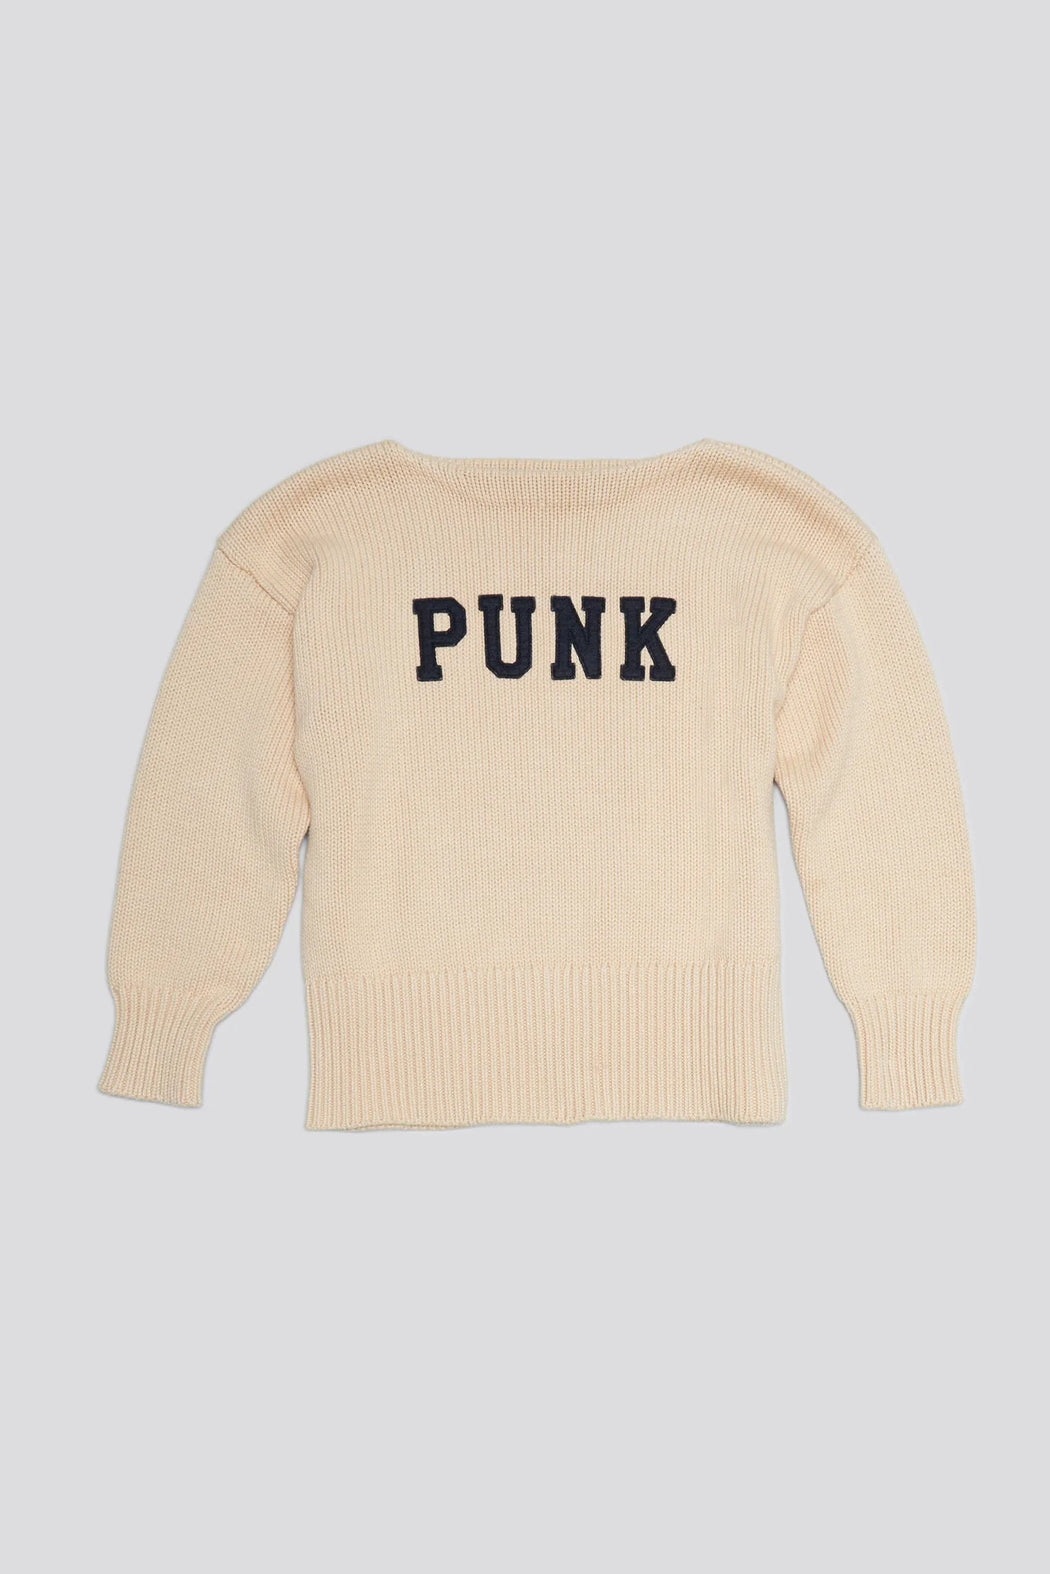 R13 :: Shrunken Punk Sweater